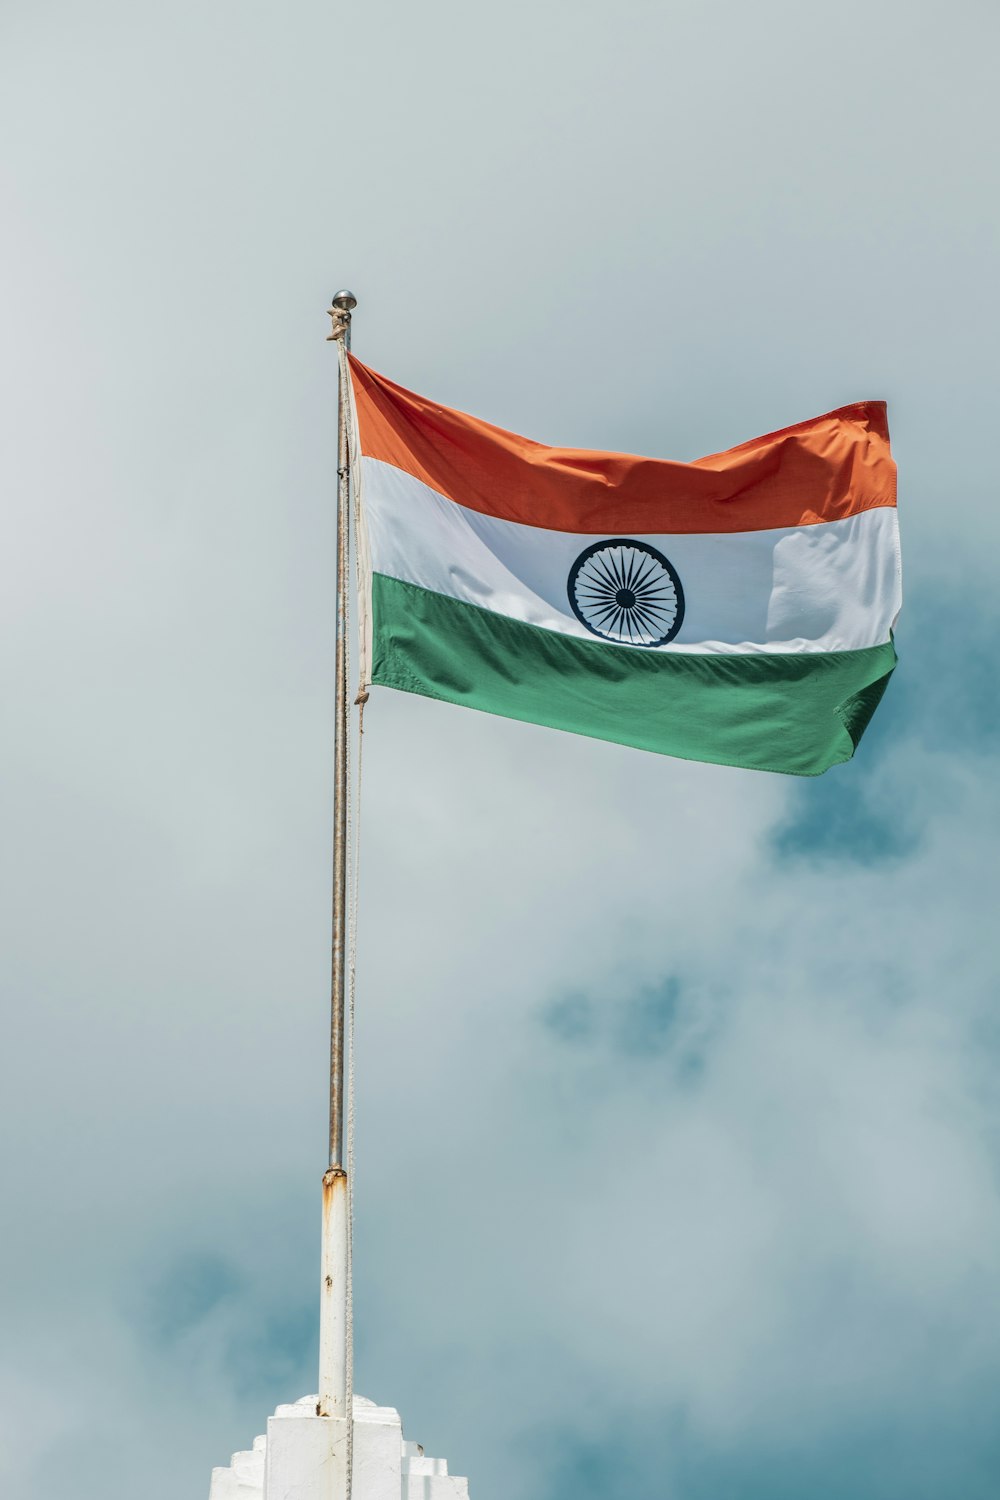 インドの旗が空高く飛んでいる